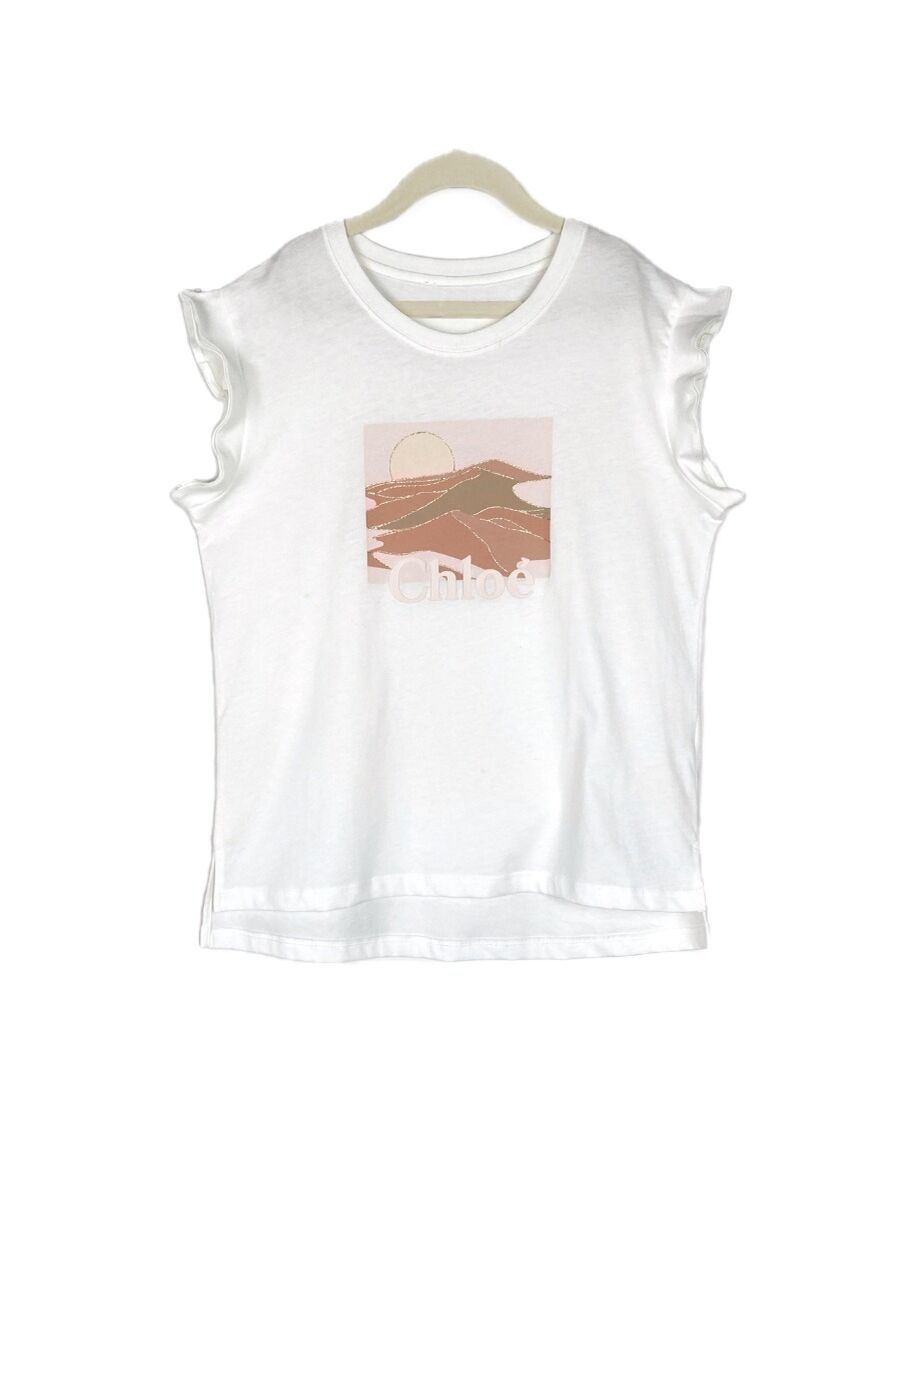 image 1 Детская футболка молочного цвета с воланами на рукавах